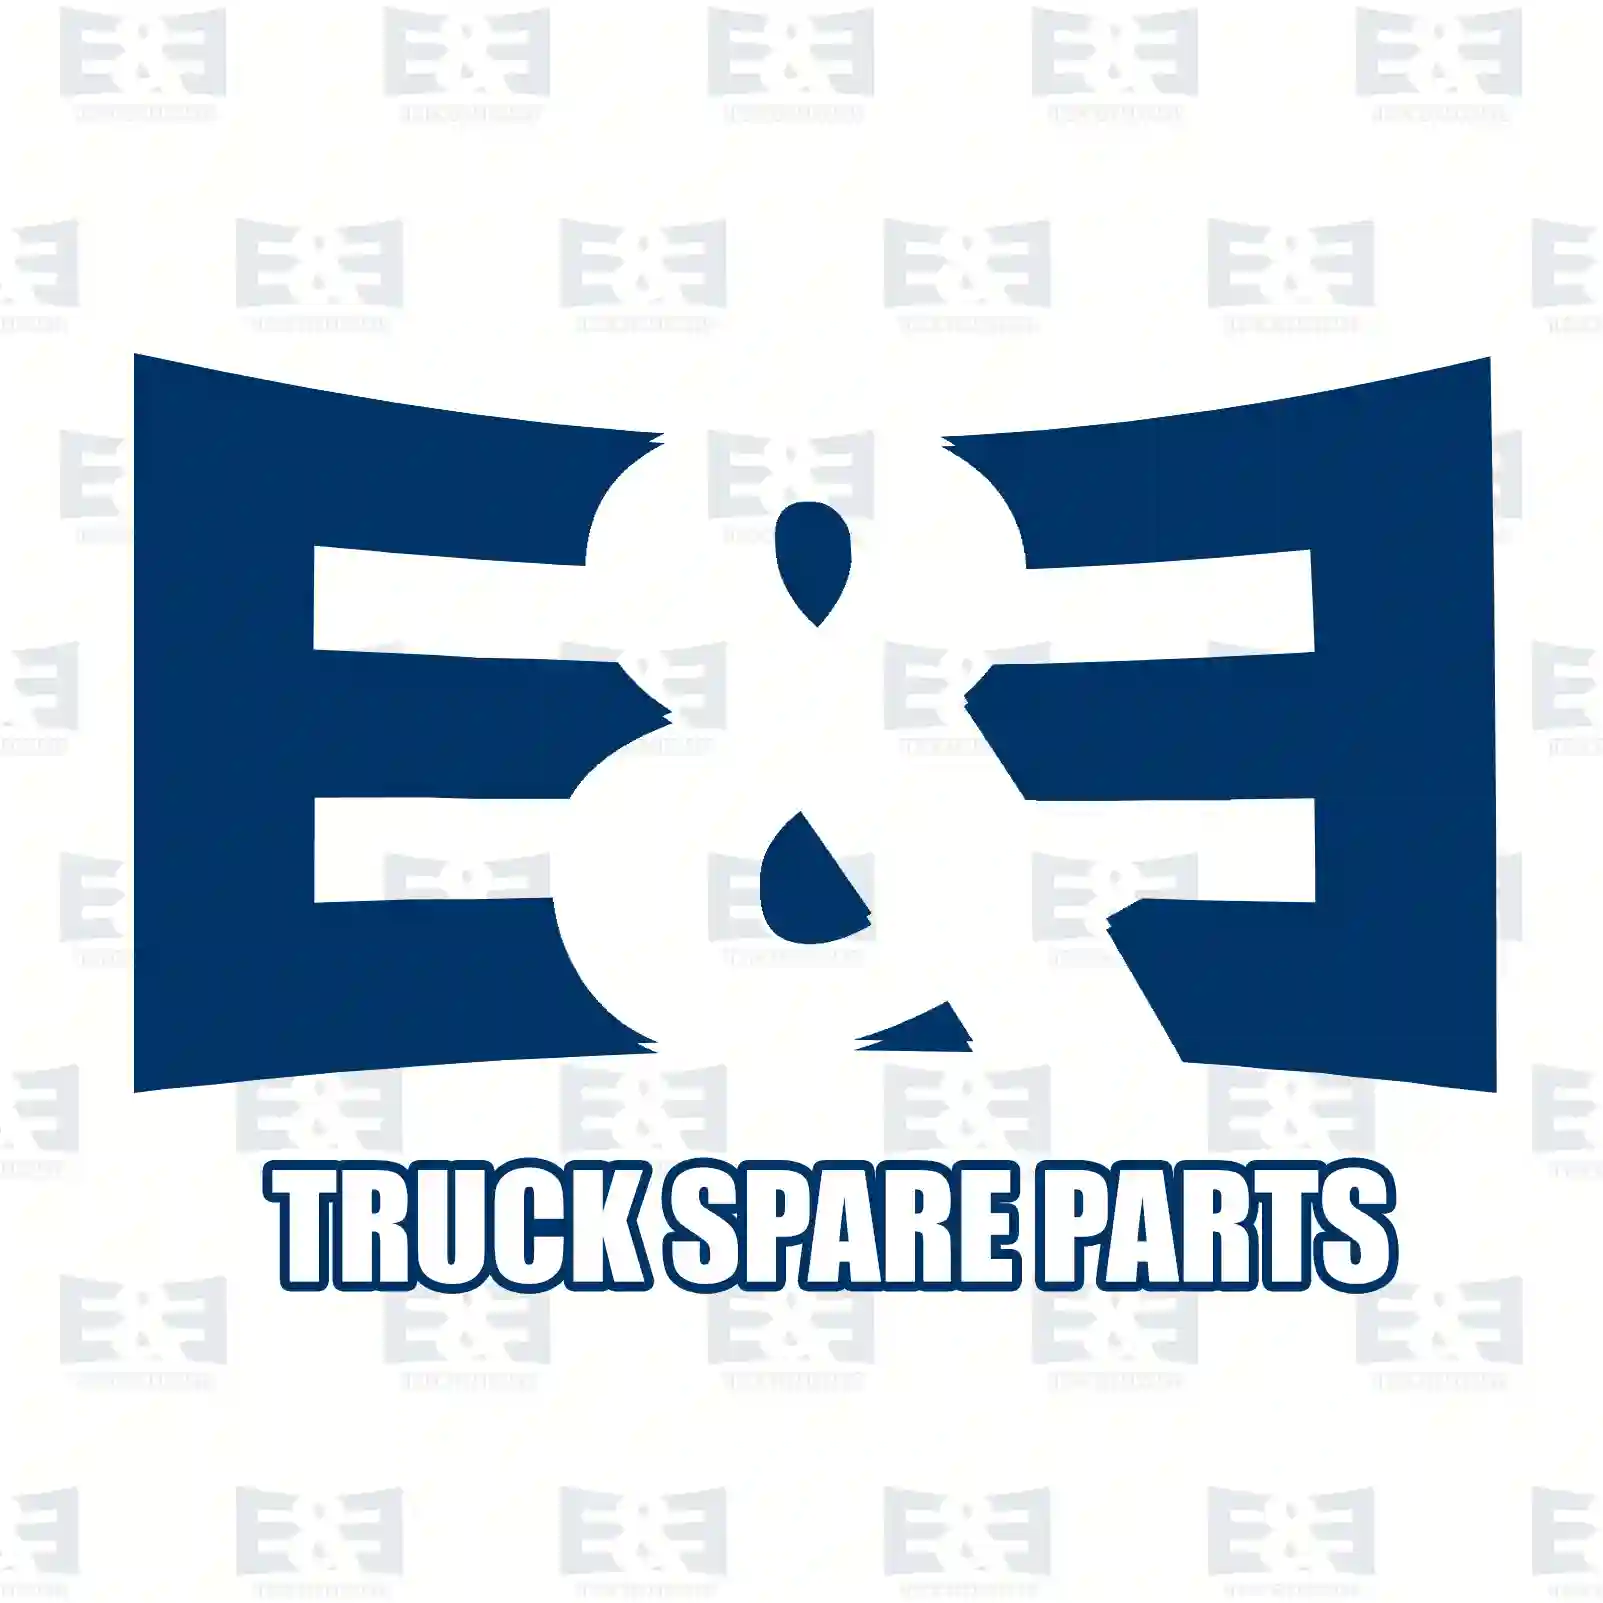 Fan clutch, 2E2202278, 504239357, 5801587052, 5801687230 ||  2E2202278 E&E Truck Spare Parts | Truck Spare Parts, Auotomotive Spare Parts Fan clutch, 2E2202278, 504239357, 5801587052, 5801687230 ||  2E2202278 E&E Truck Spare Parts | Truck Spare Parts, Auotomotive Spare Parts